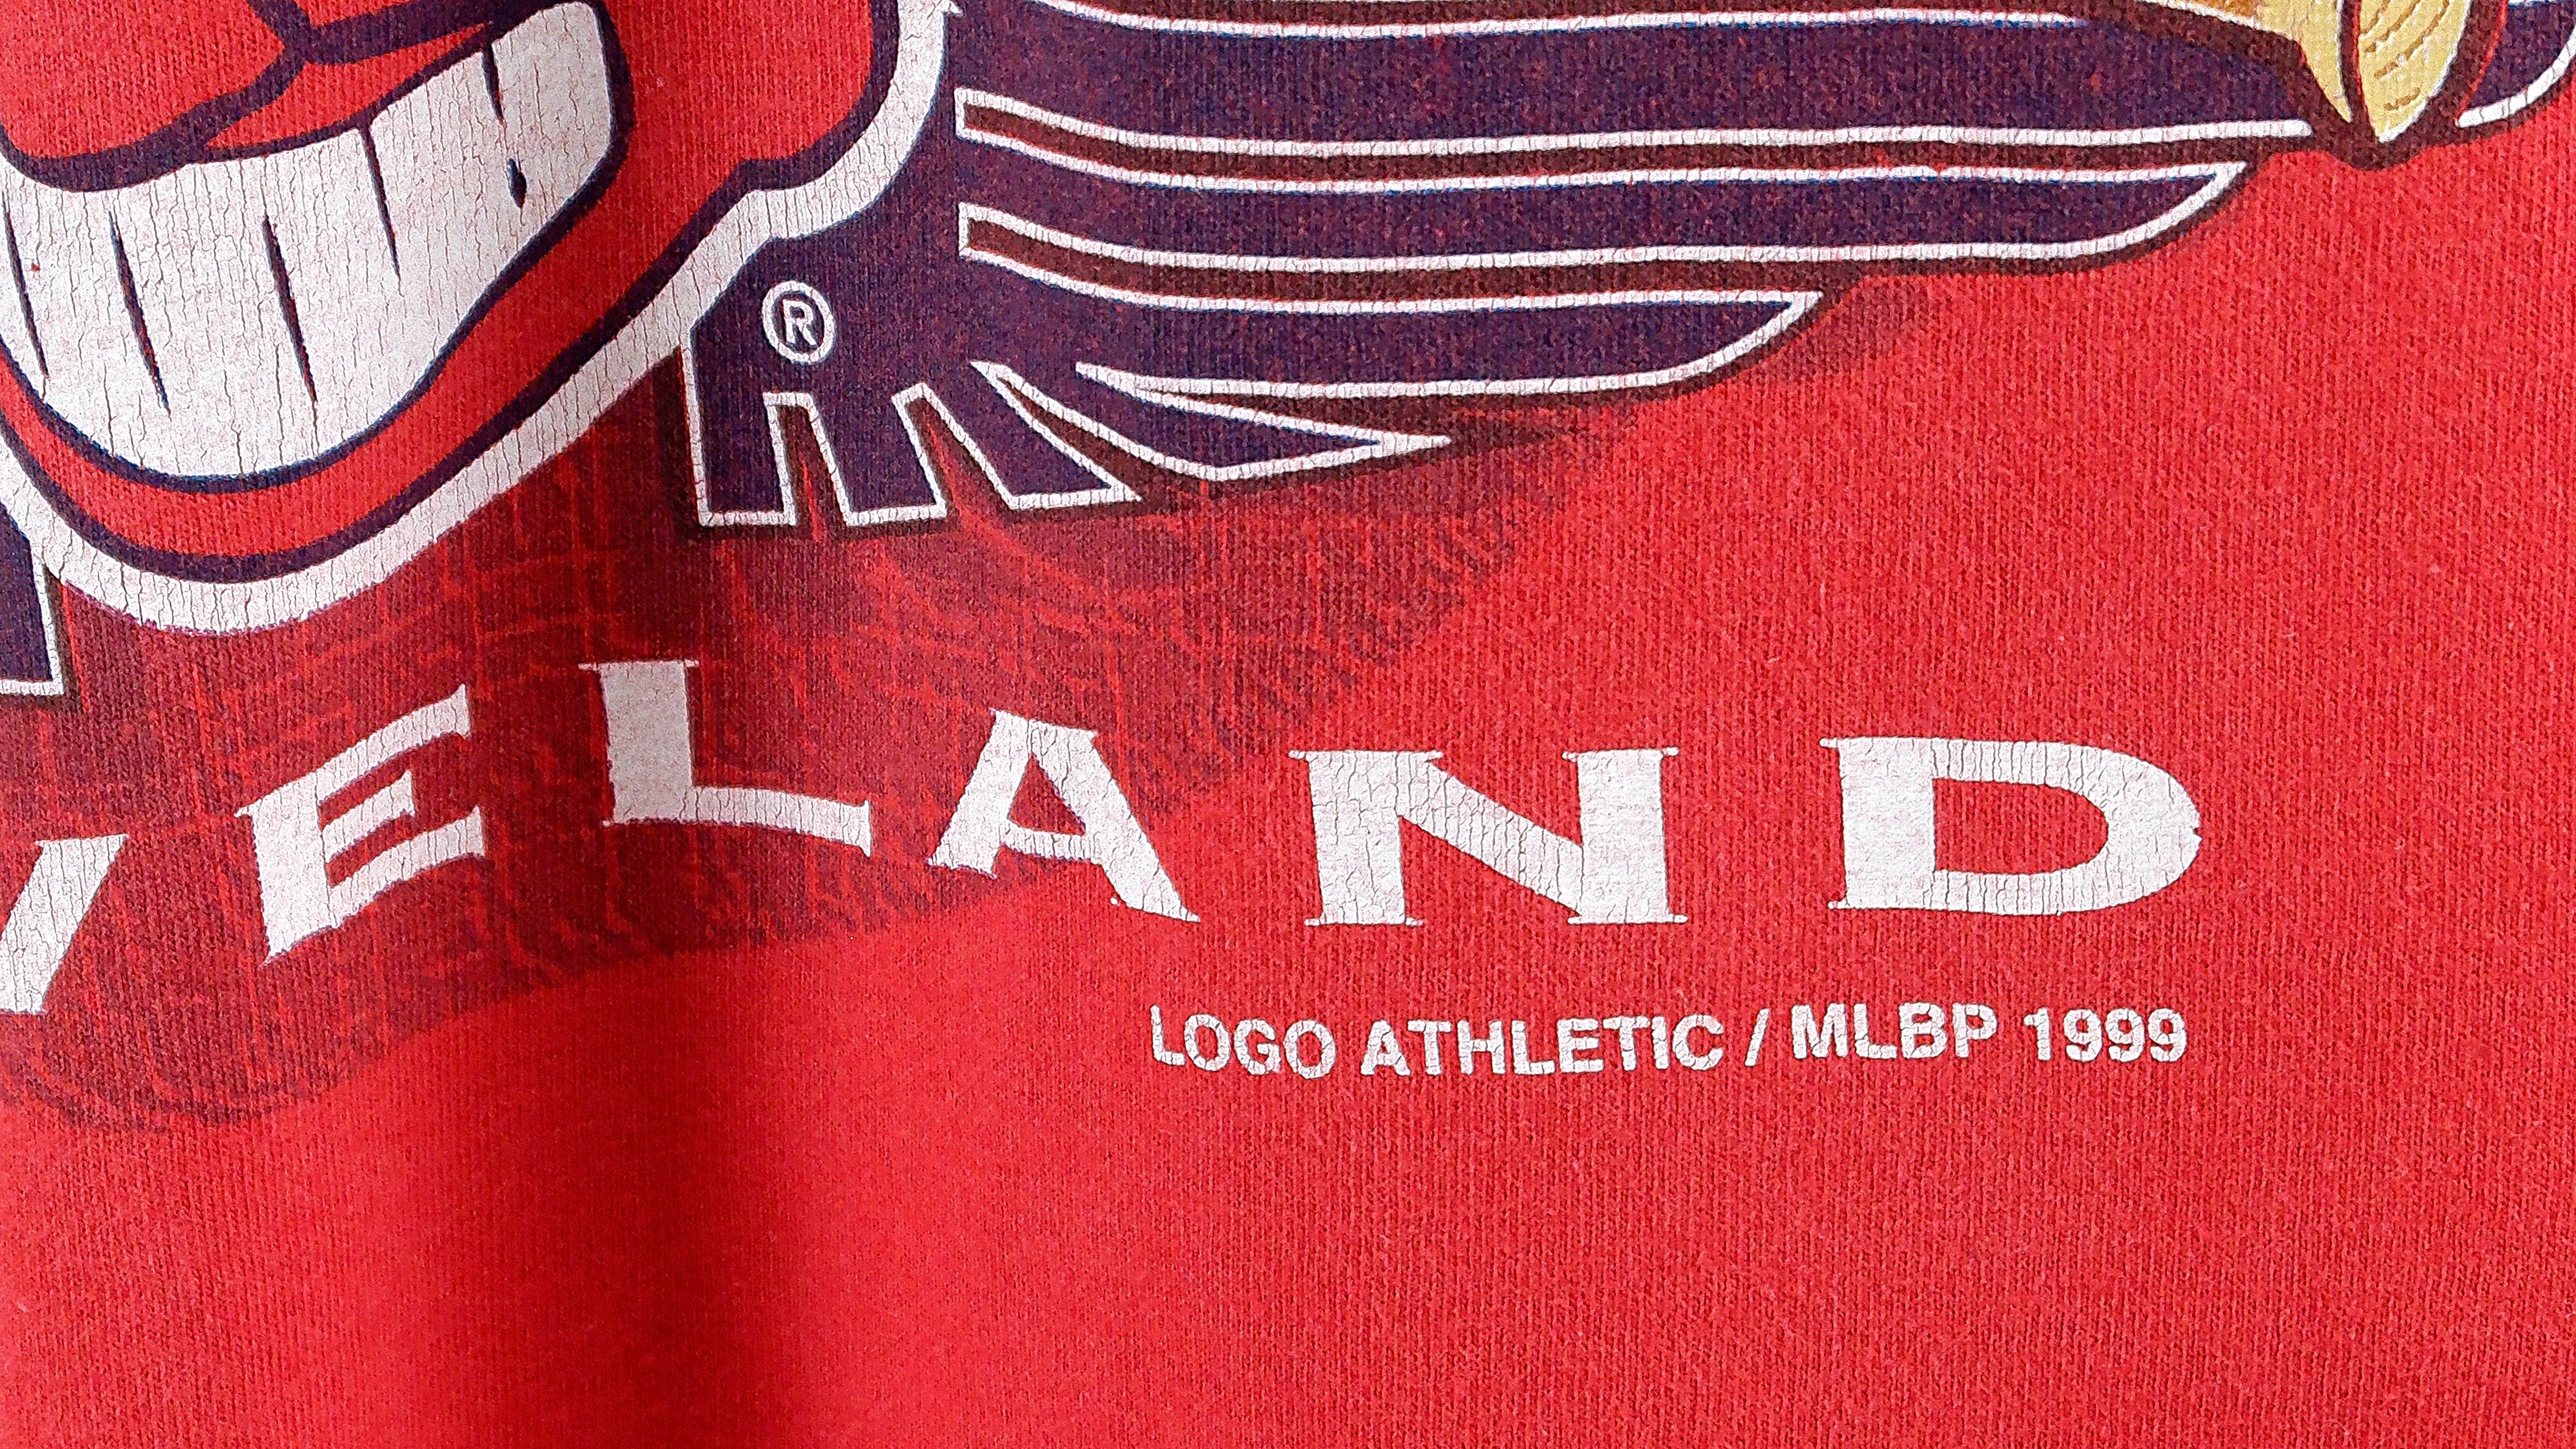 Vintage 1997 Cleveland Indians AL Champions Pro Player Caricature T-Shirt  Sz.L